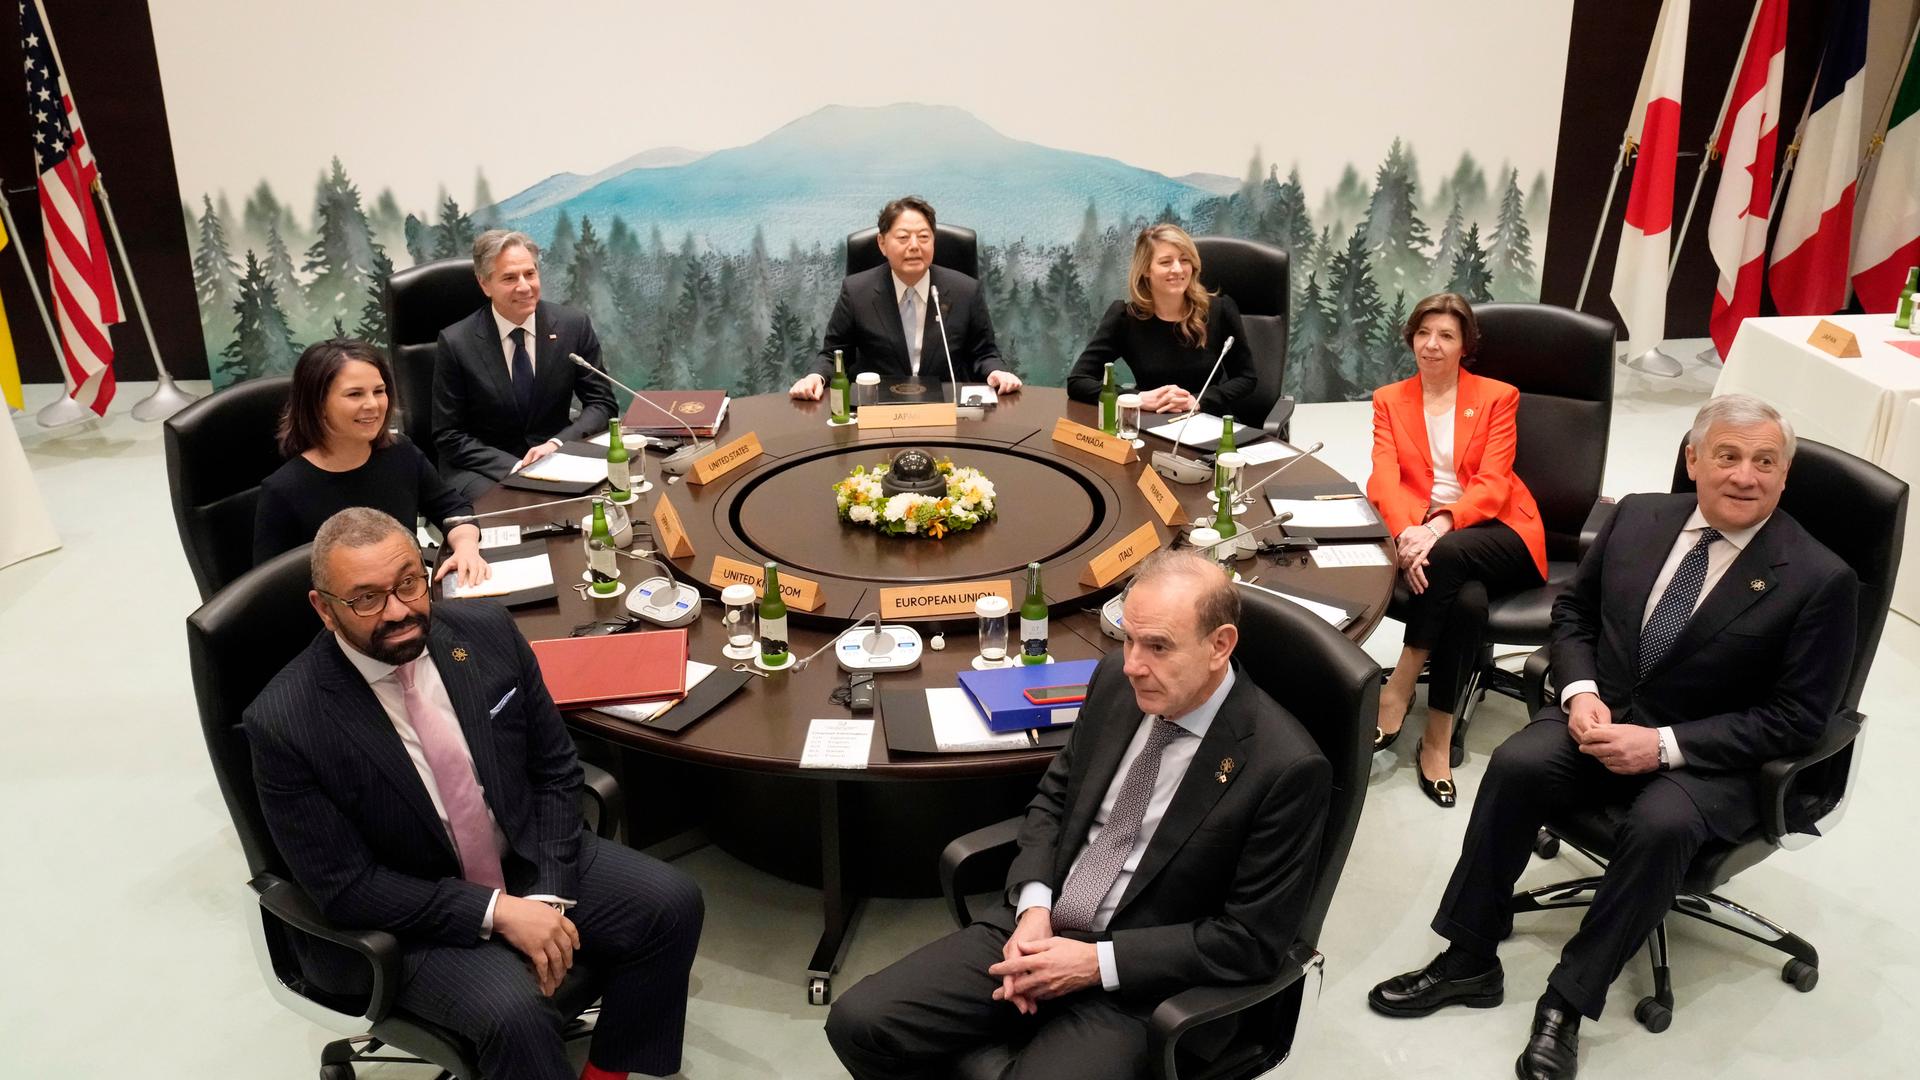 Das Bild zeigt die aktuellen Außenminister der G7-Staaten. Sie sitzen an einem runden Tisch und schauen in die Kamera.